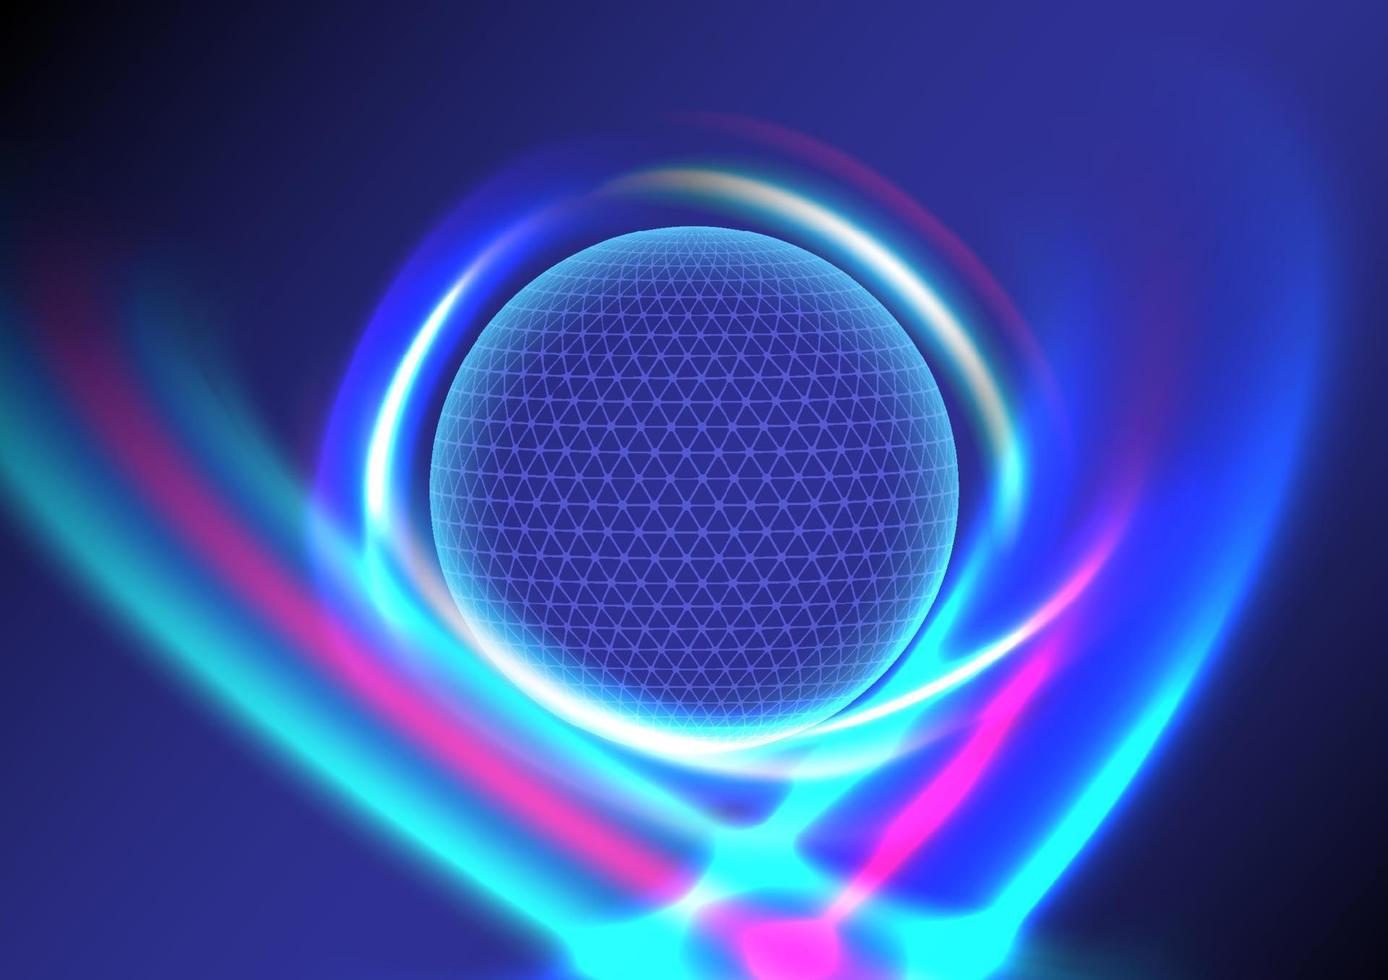 leuchtender Globuskreis auf blauem Hi-Tech-Hintergrund mit mehrfarbigen, hellen, lasergekrümmten Linien um ihn herum auf blauem Hintergrund mit Farbverlauf. vektor